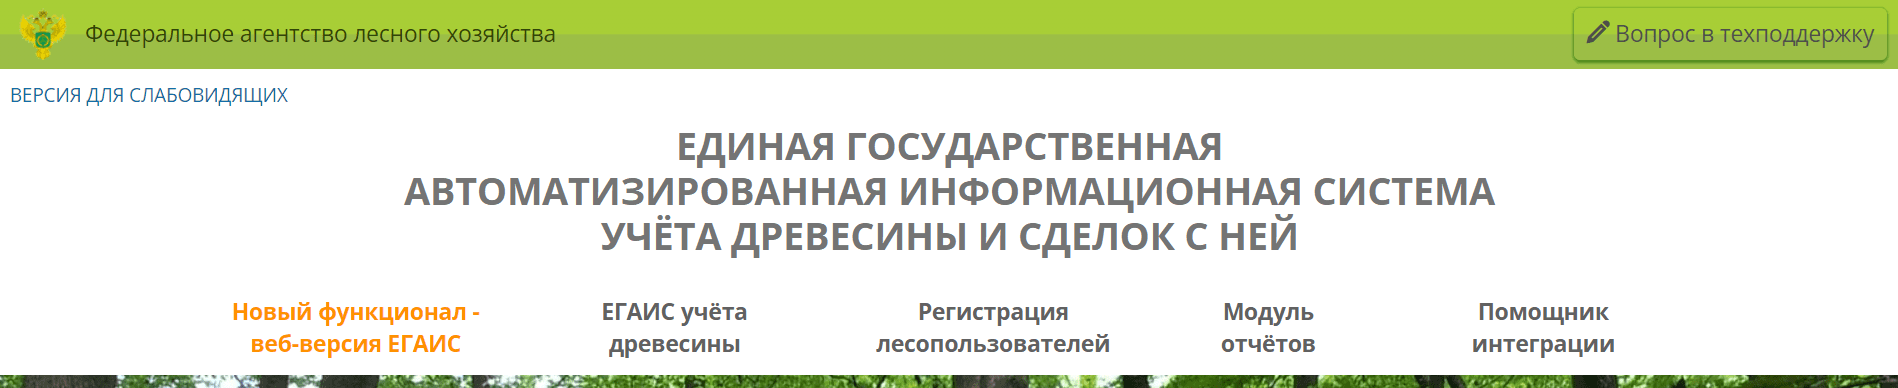 Федеральное агентство лесного хозяйства (lesegais.ru)